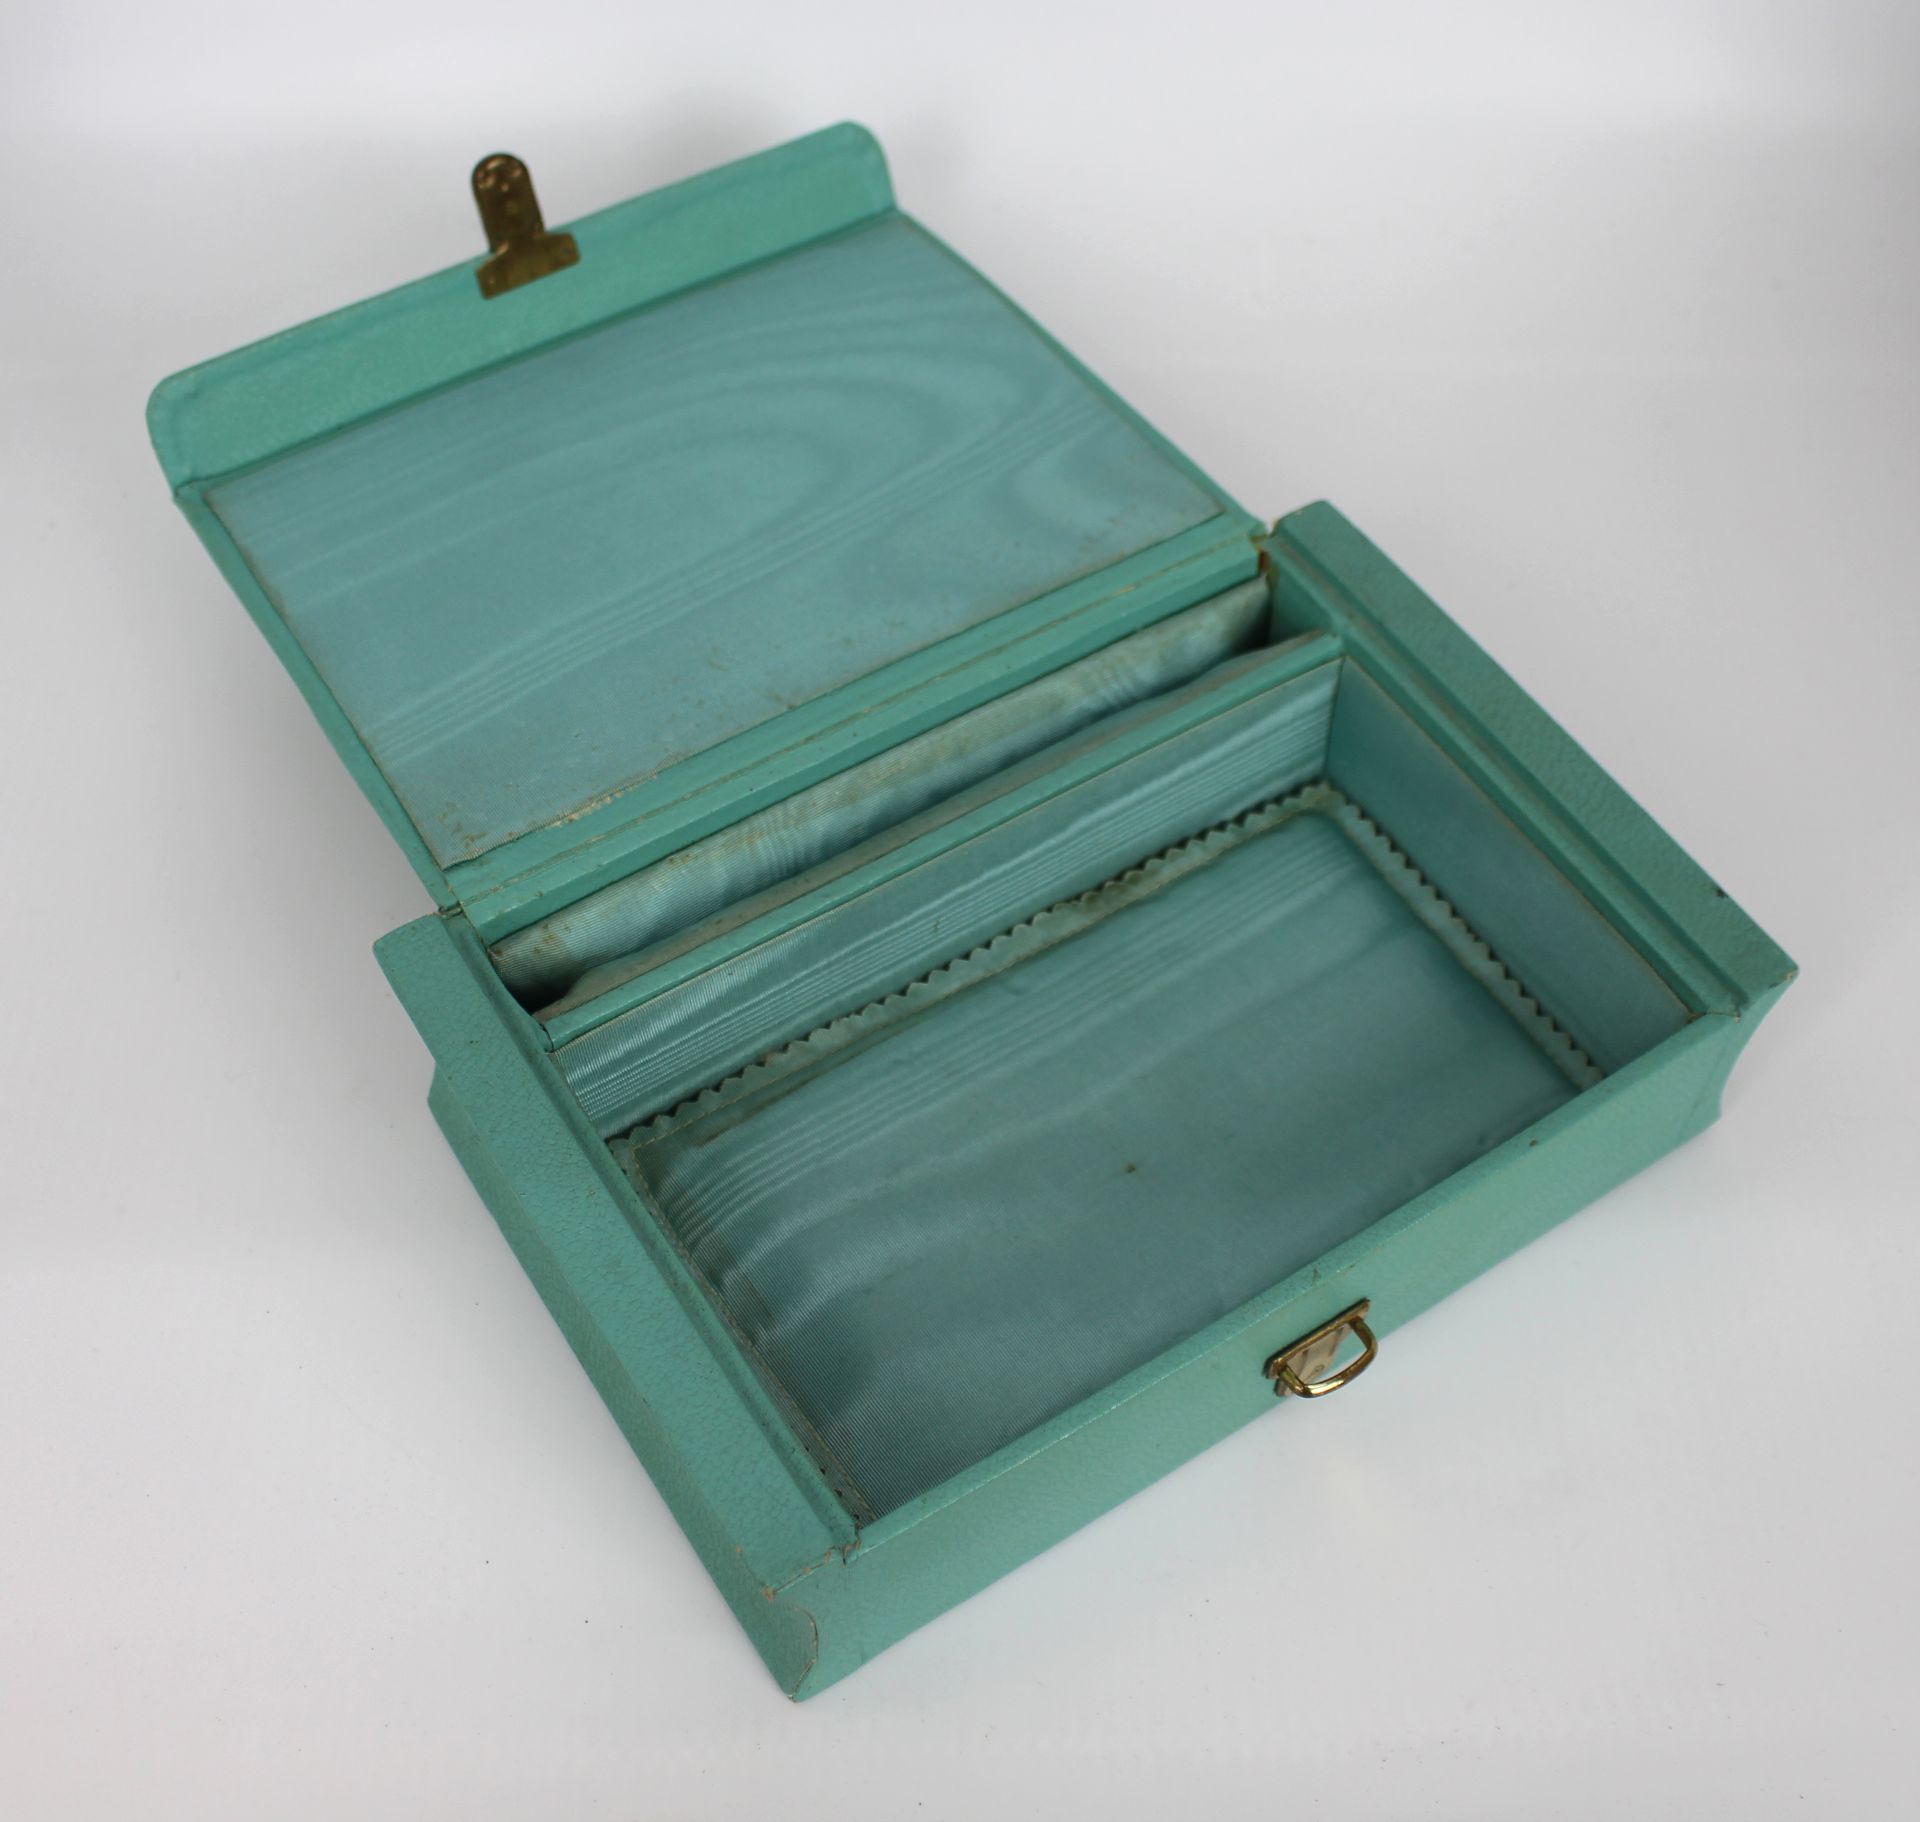 Vintage Turquoise & Gilt Fleur de Lys Jewellery Box - Image 3 of 3